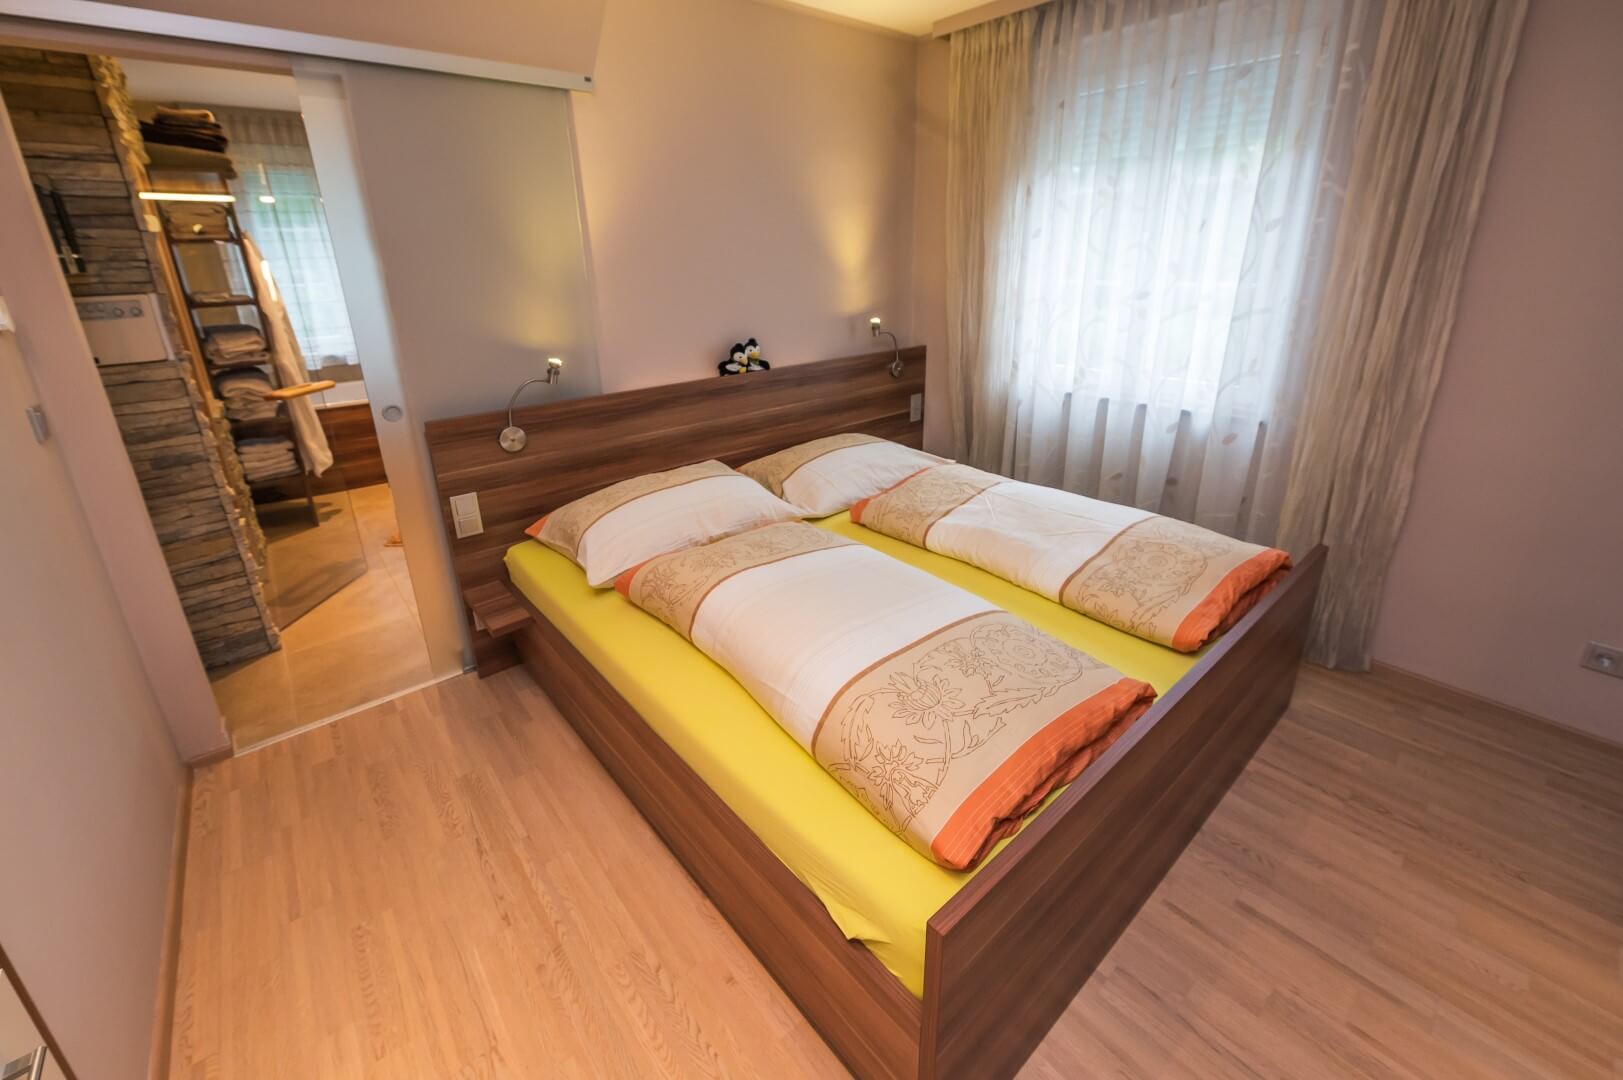 Ein einladendes, helles Zimmer mit Doppelbett, gelber Bettwäsche und Holzelementen im "Haus Michaela".